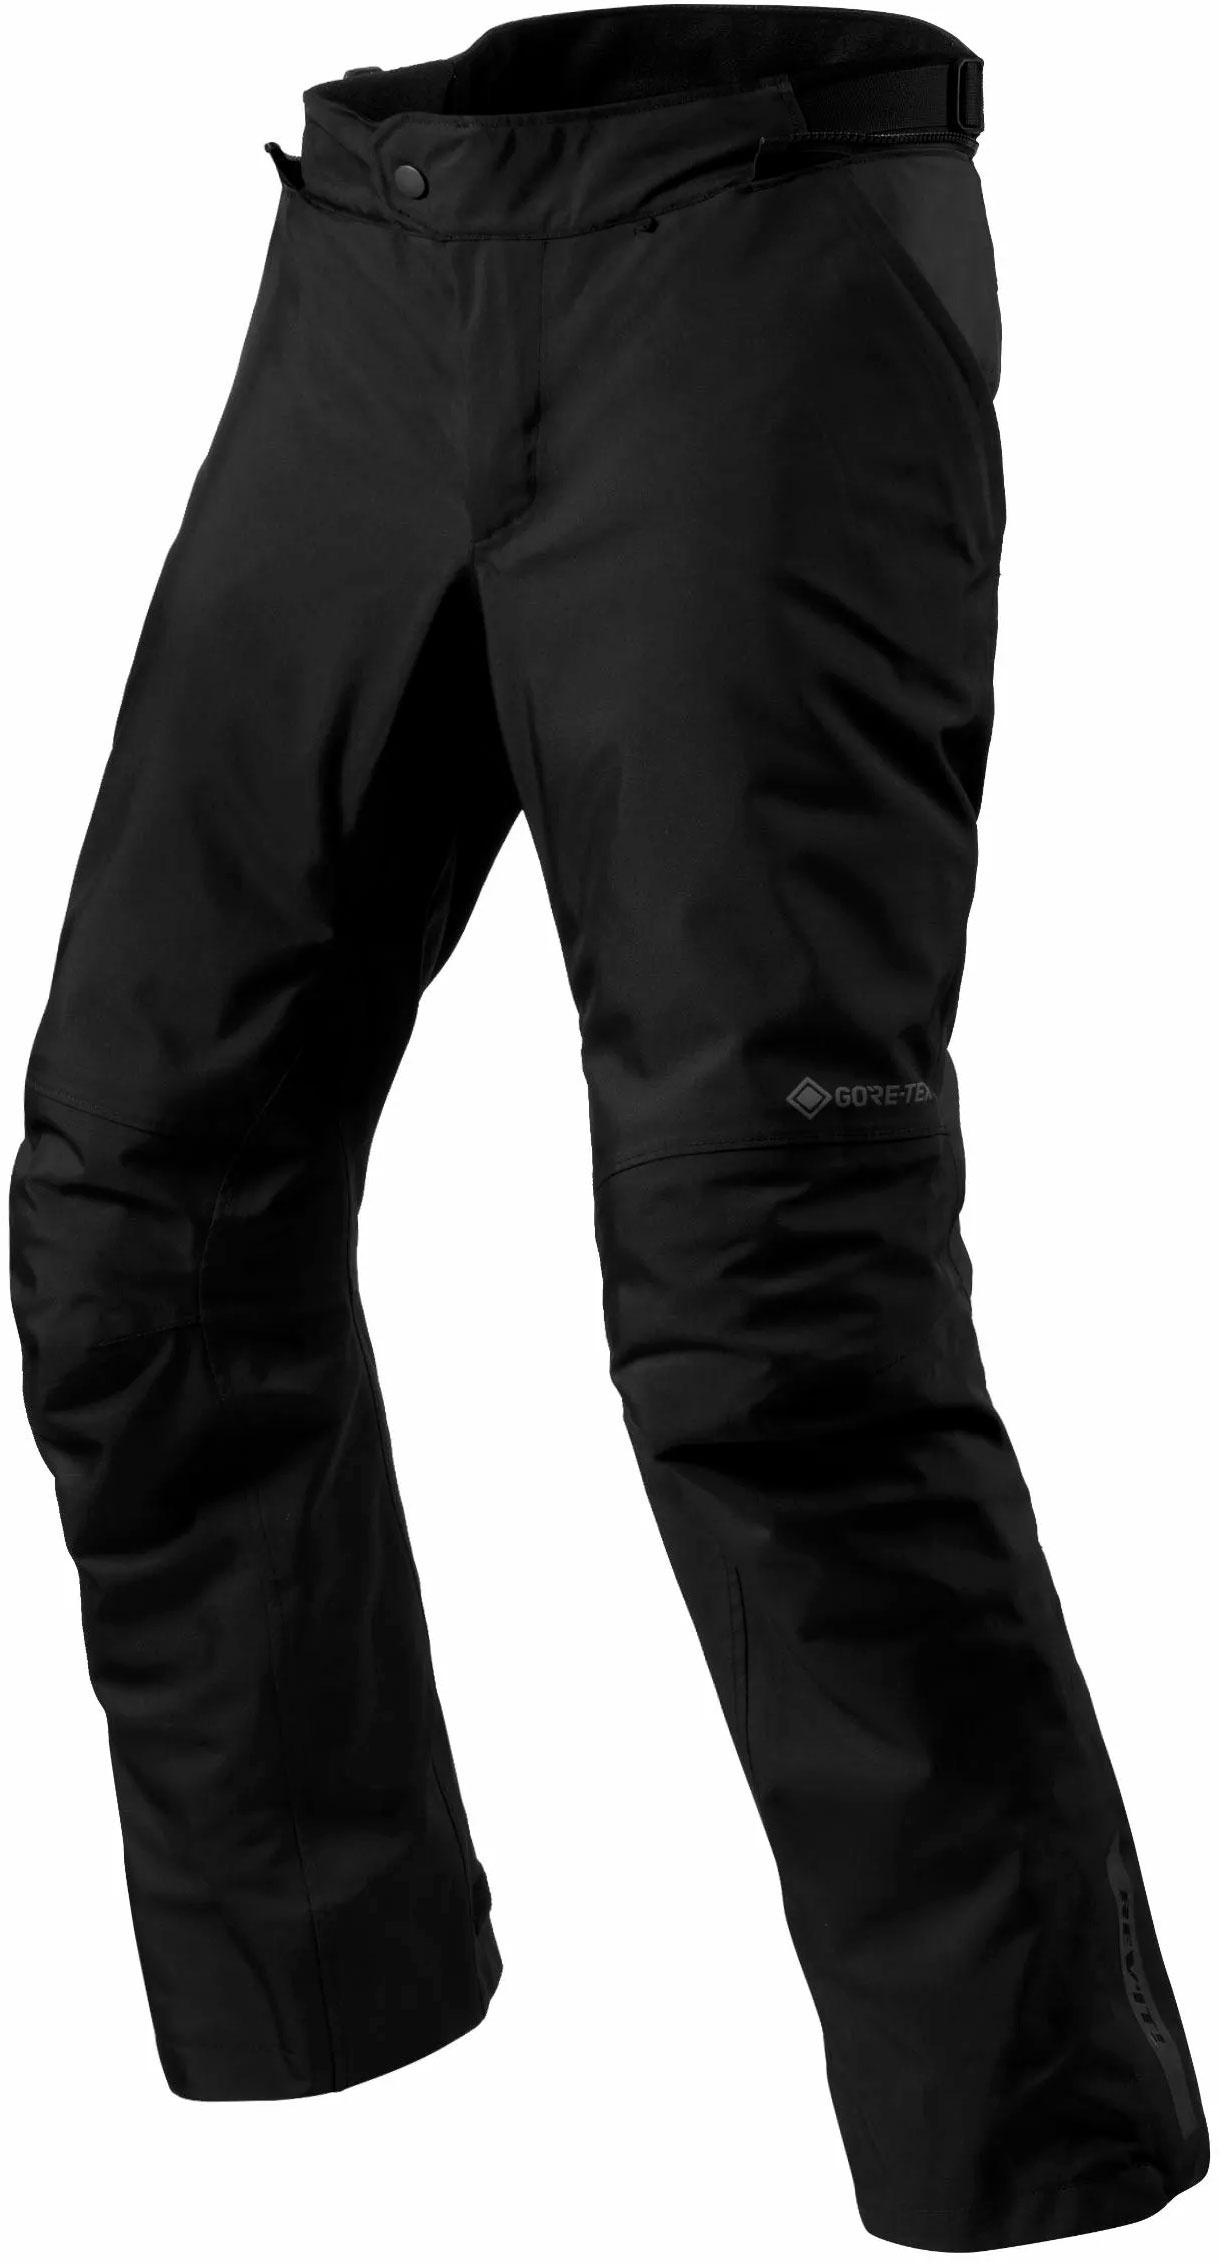 Revit Vertical GTX, pantalon textile imperméable - Noir - S